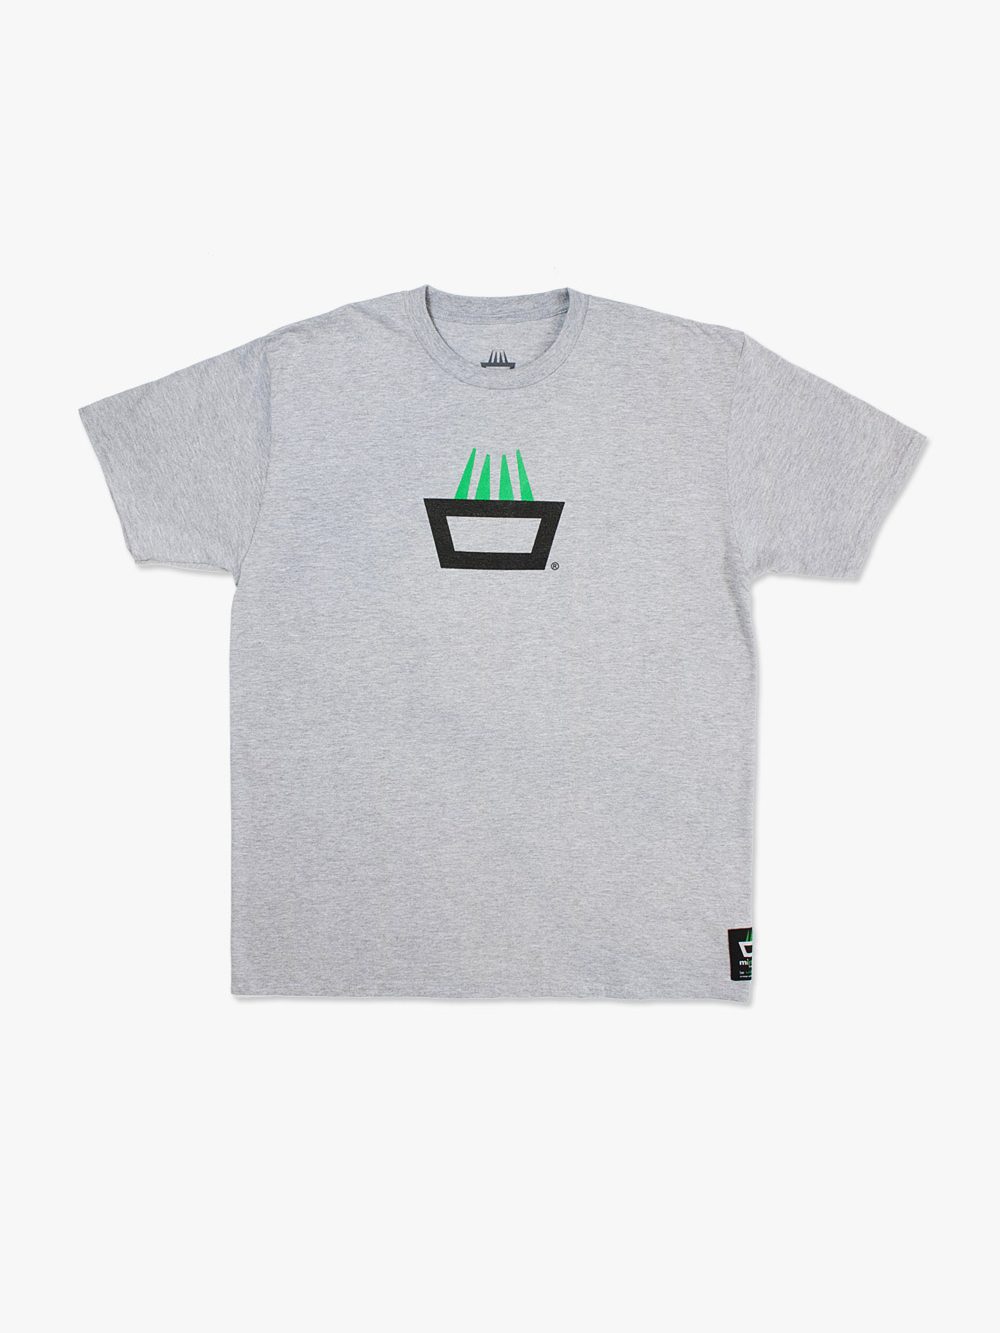 Camiseta mimaría hempworks color gris logo original